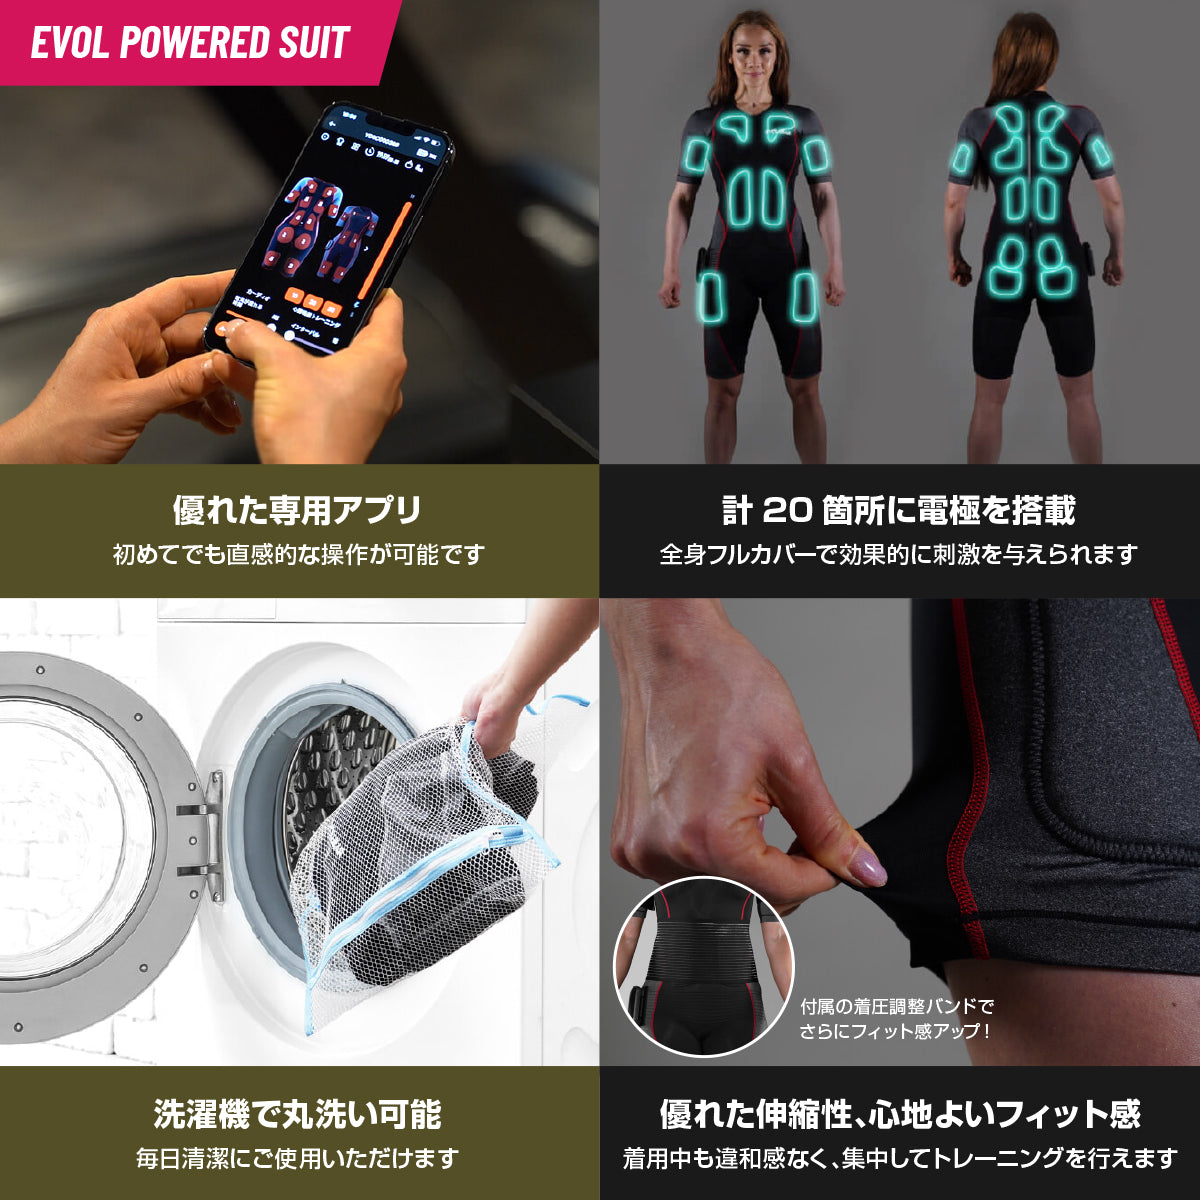 【NEW!】EMSスーツ+リカンベントバイク セット